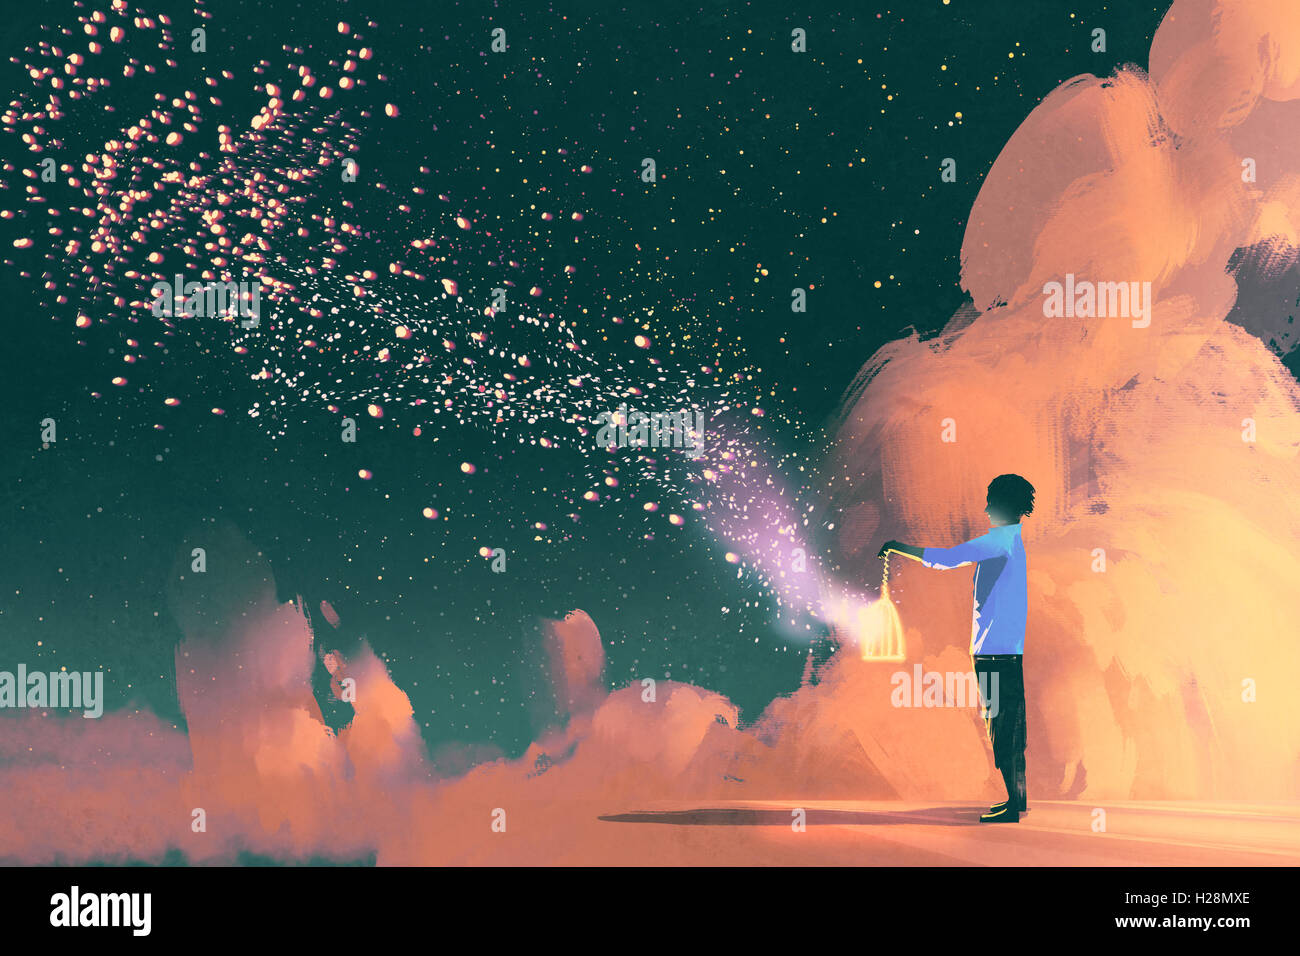 Uomo con una gabbia con galleggiante splendenti polvere di stelle,illustrazione pittura Foto Stock